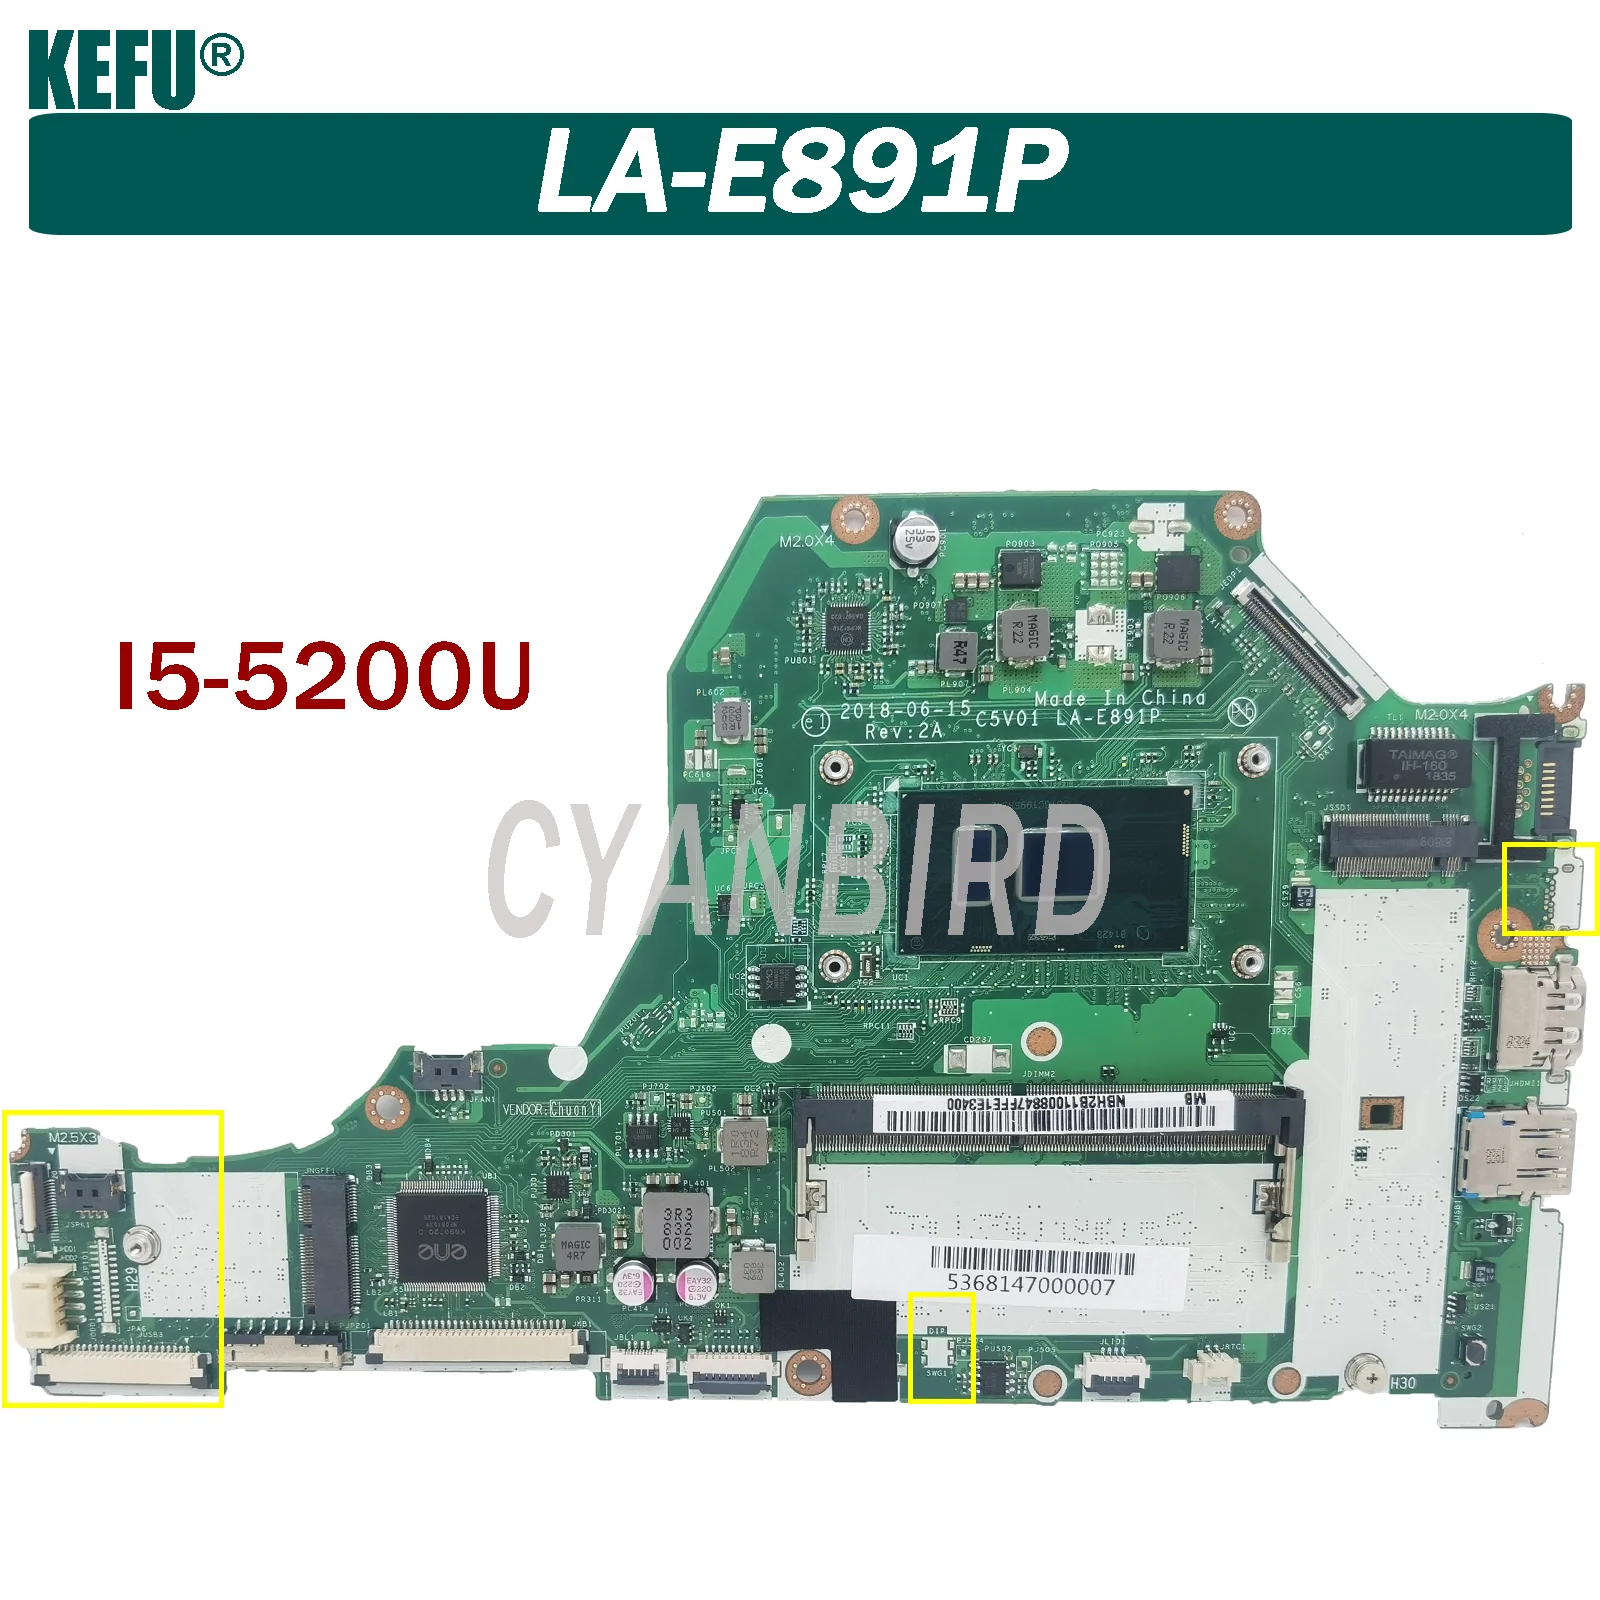 

C5V01 LA-E891P is suitable for Acer Aspire A615-51G A515-51G A315-51G A517-51G laptop motherboard I5-7200U (GM) 100% test OK